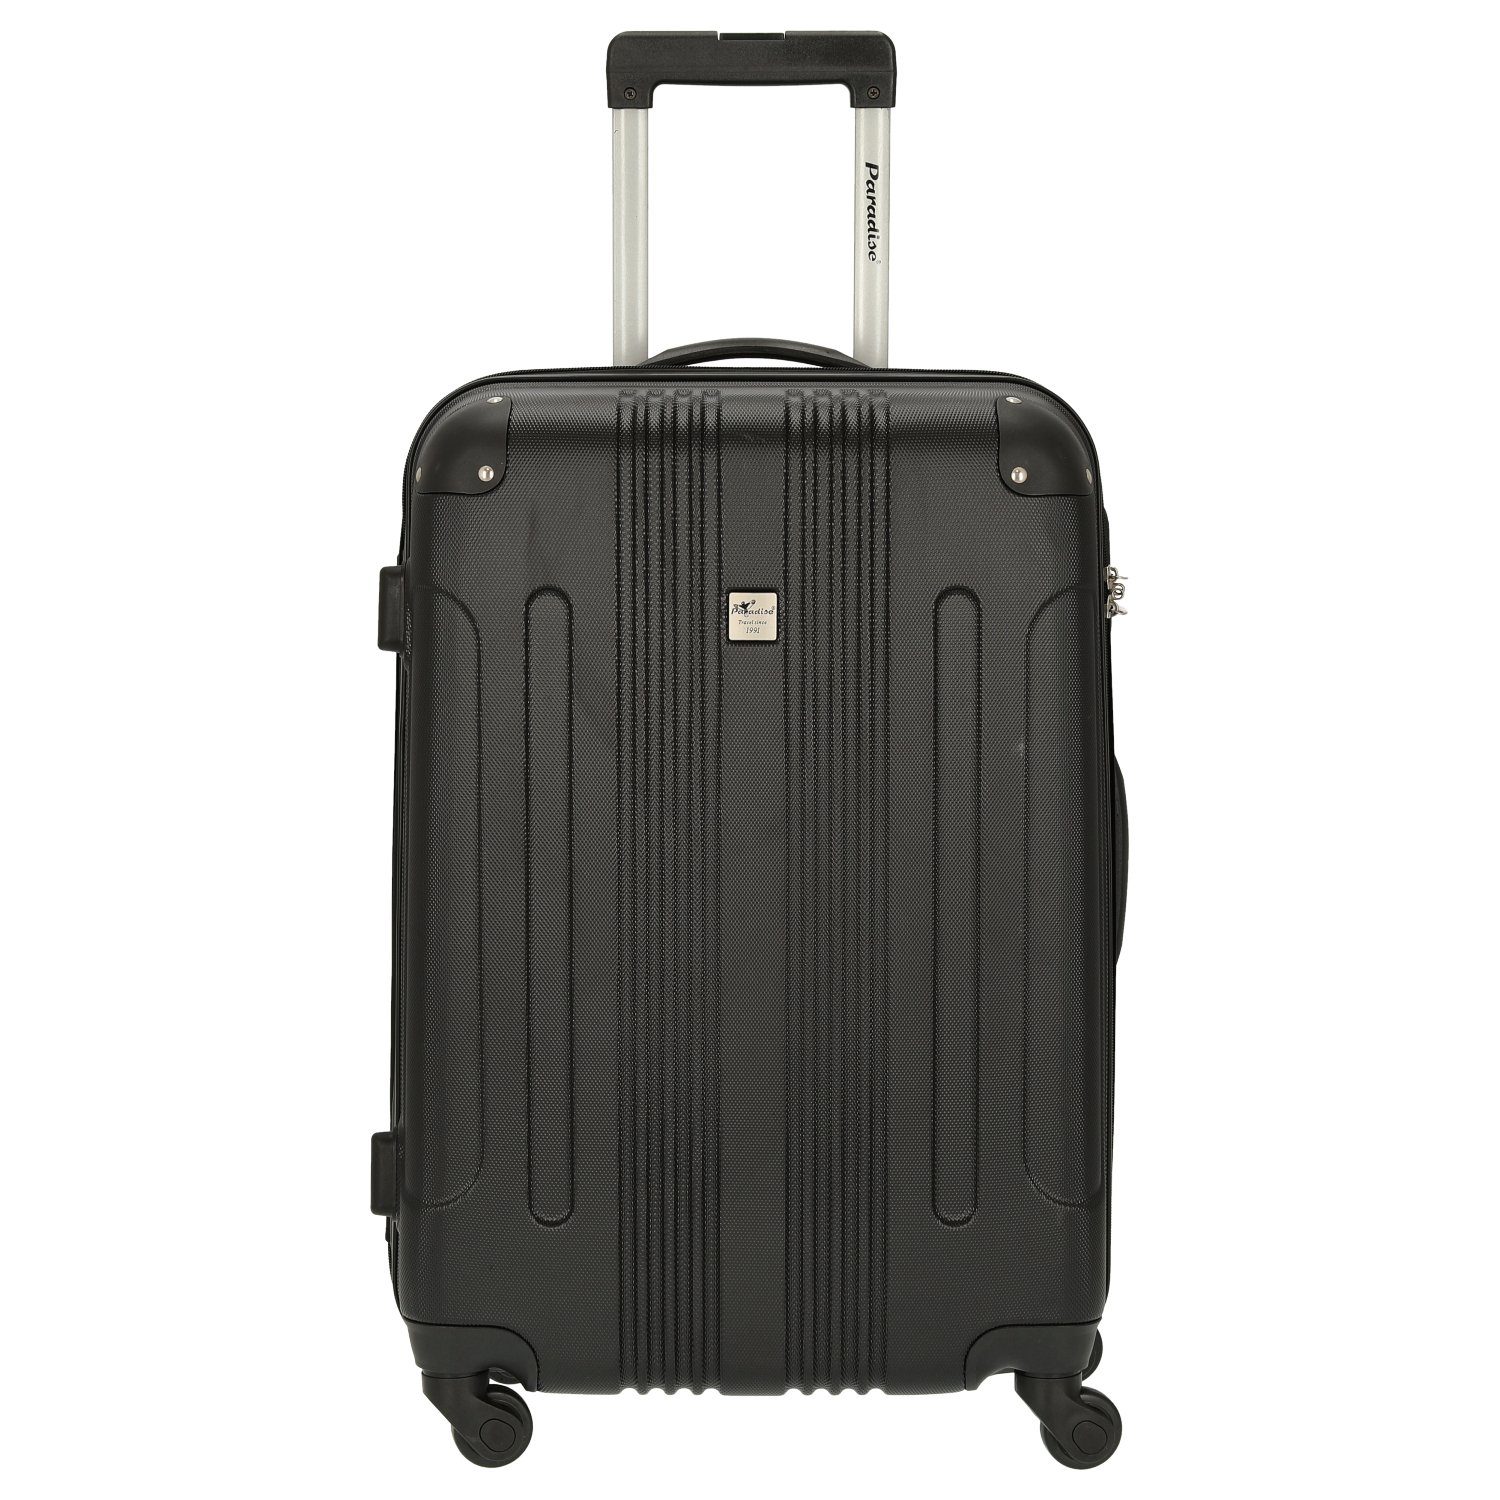 Günstige Koffer » im SALE kaufen » Bis zu 30% Rabatt | OTTO